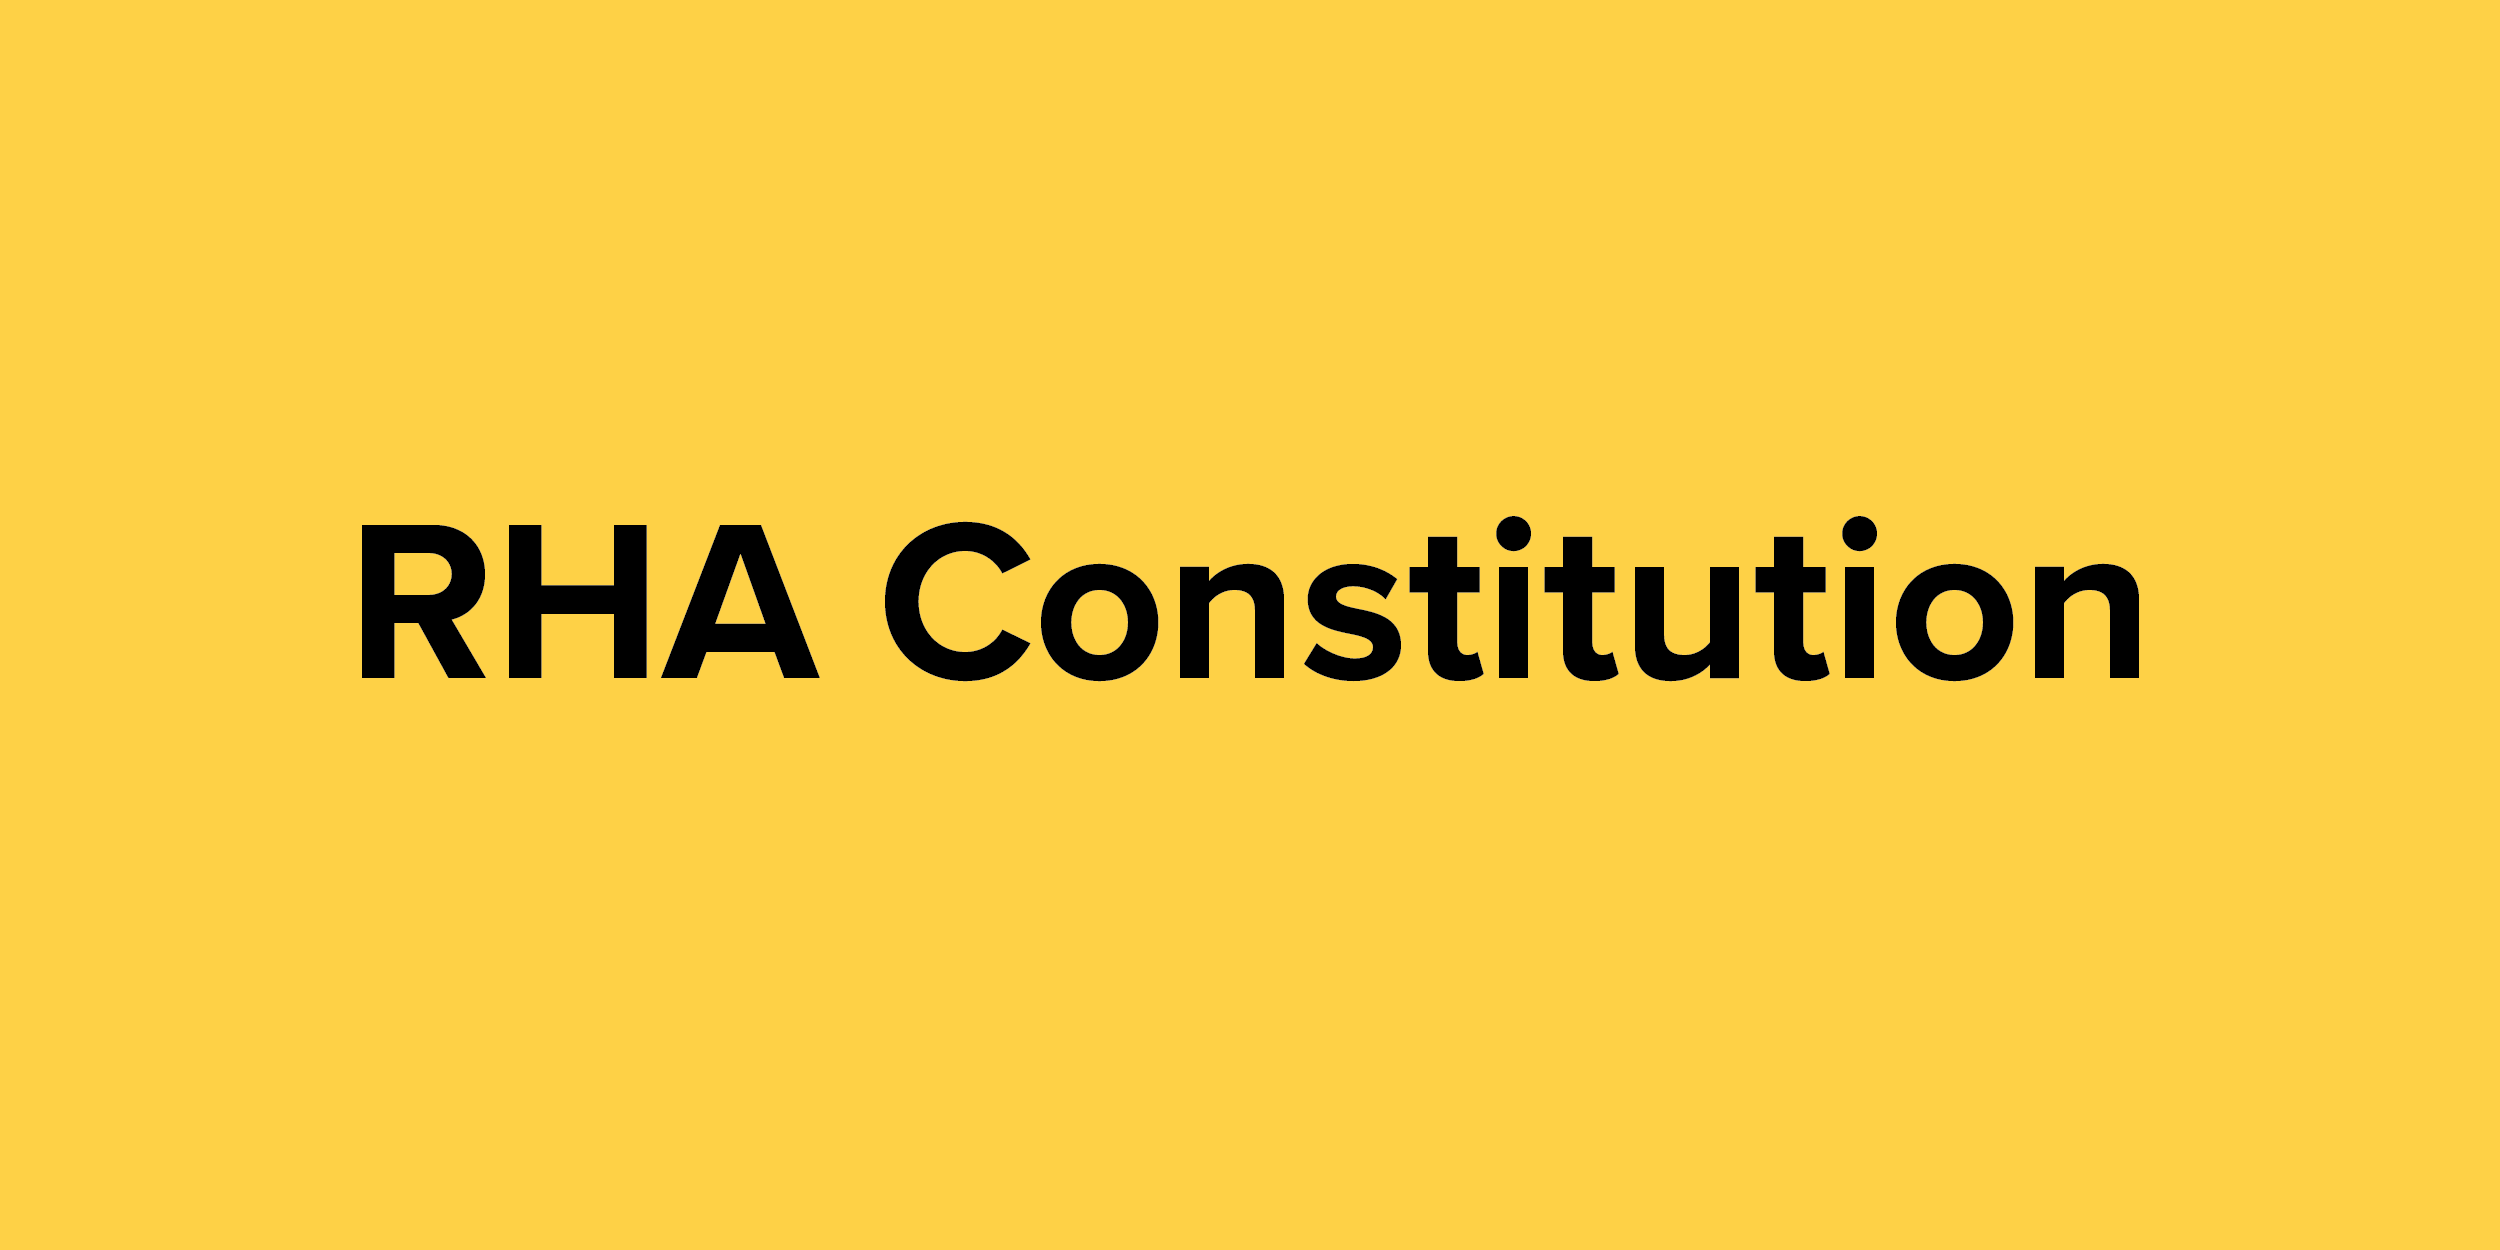 RHA Constitution